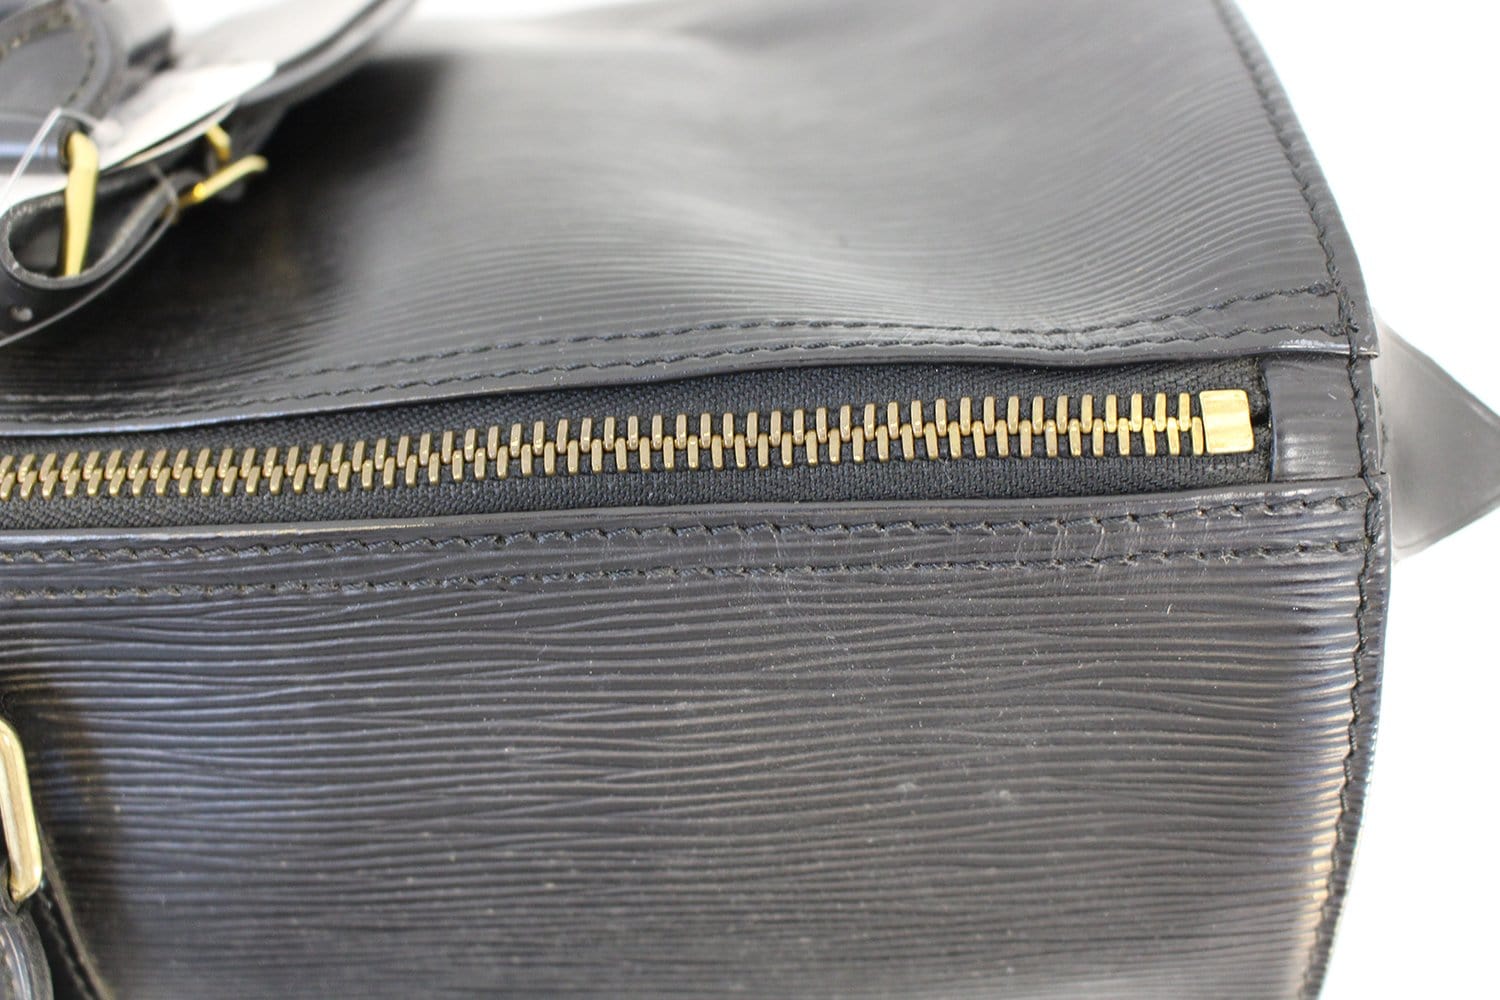 Louis Vuitton Keepall Bag Epi Leather 45 Neutral 1694441